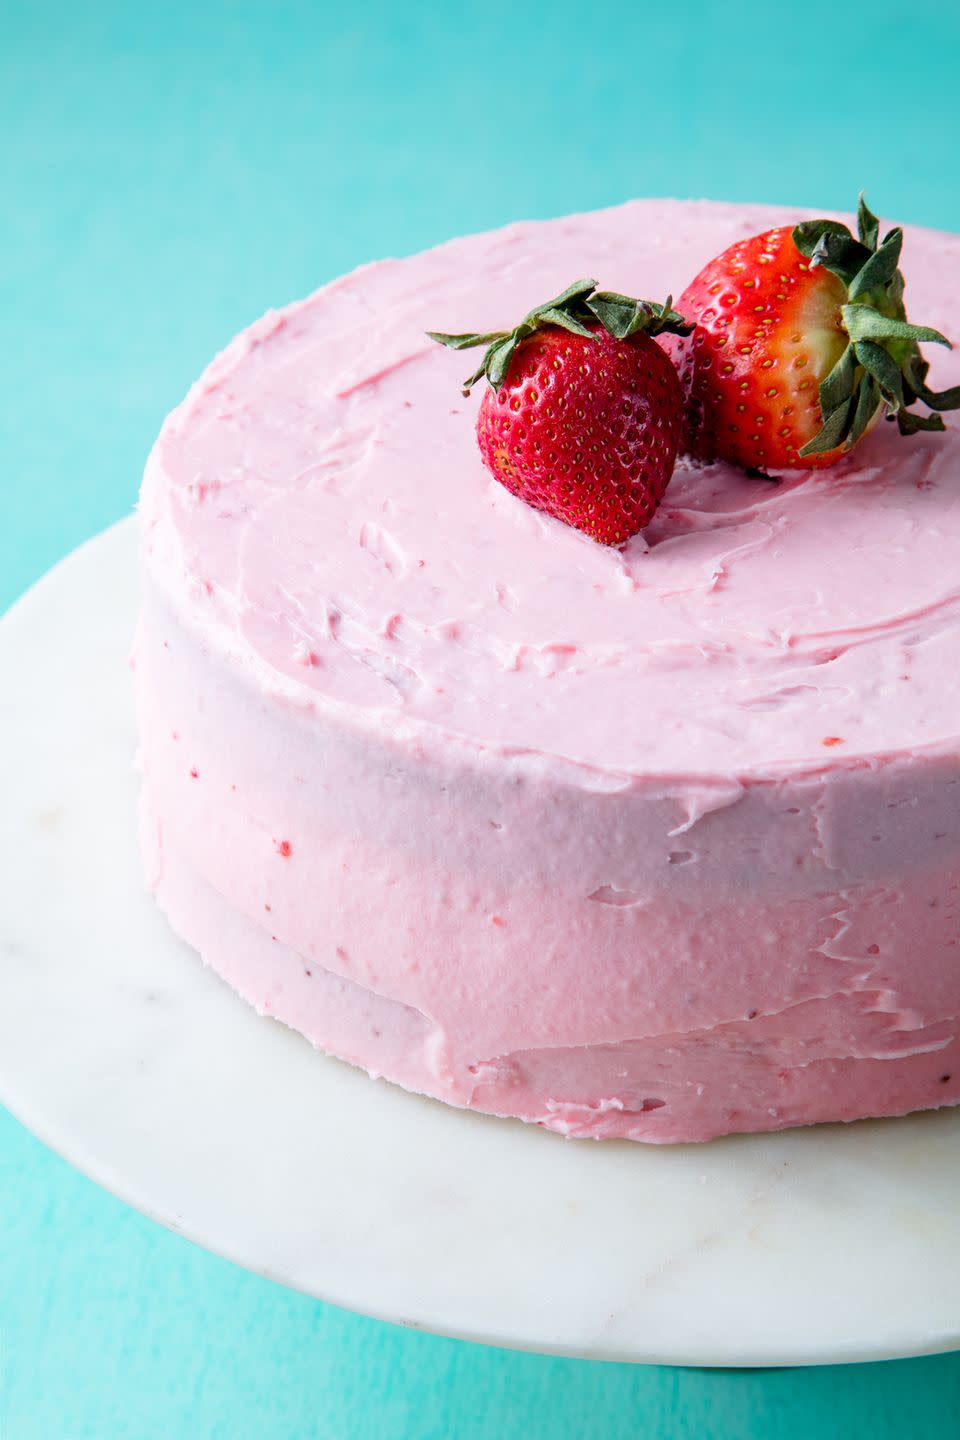 Homemade Strawberry Cake